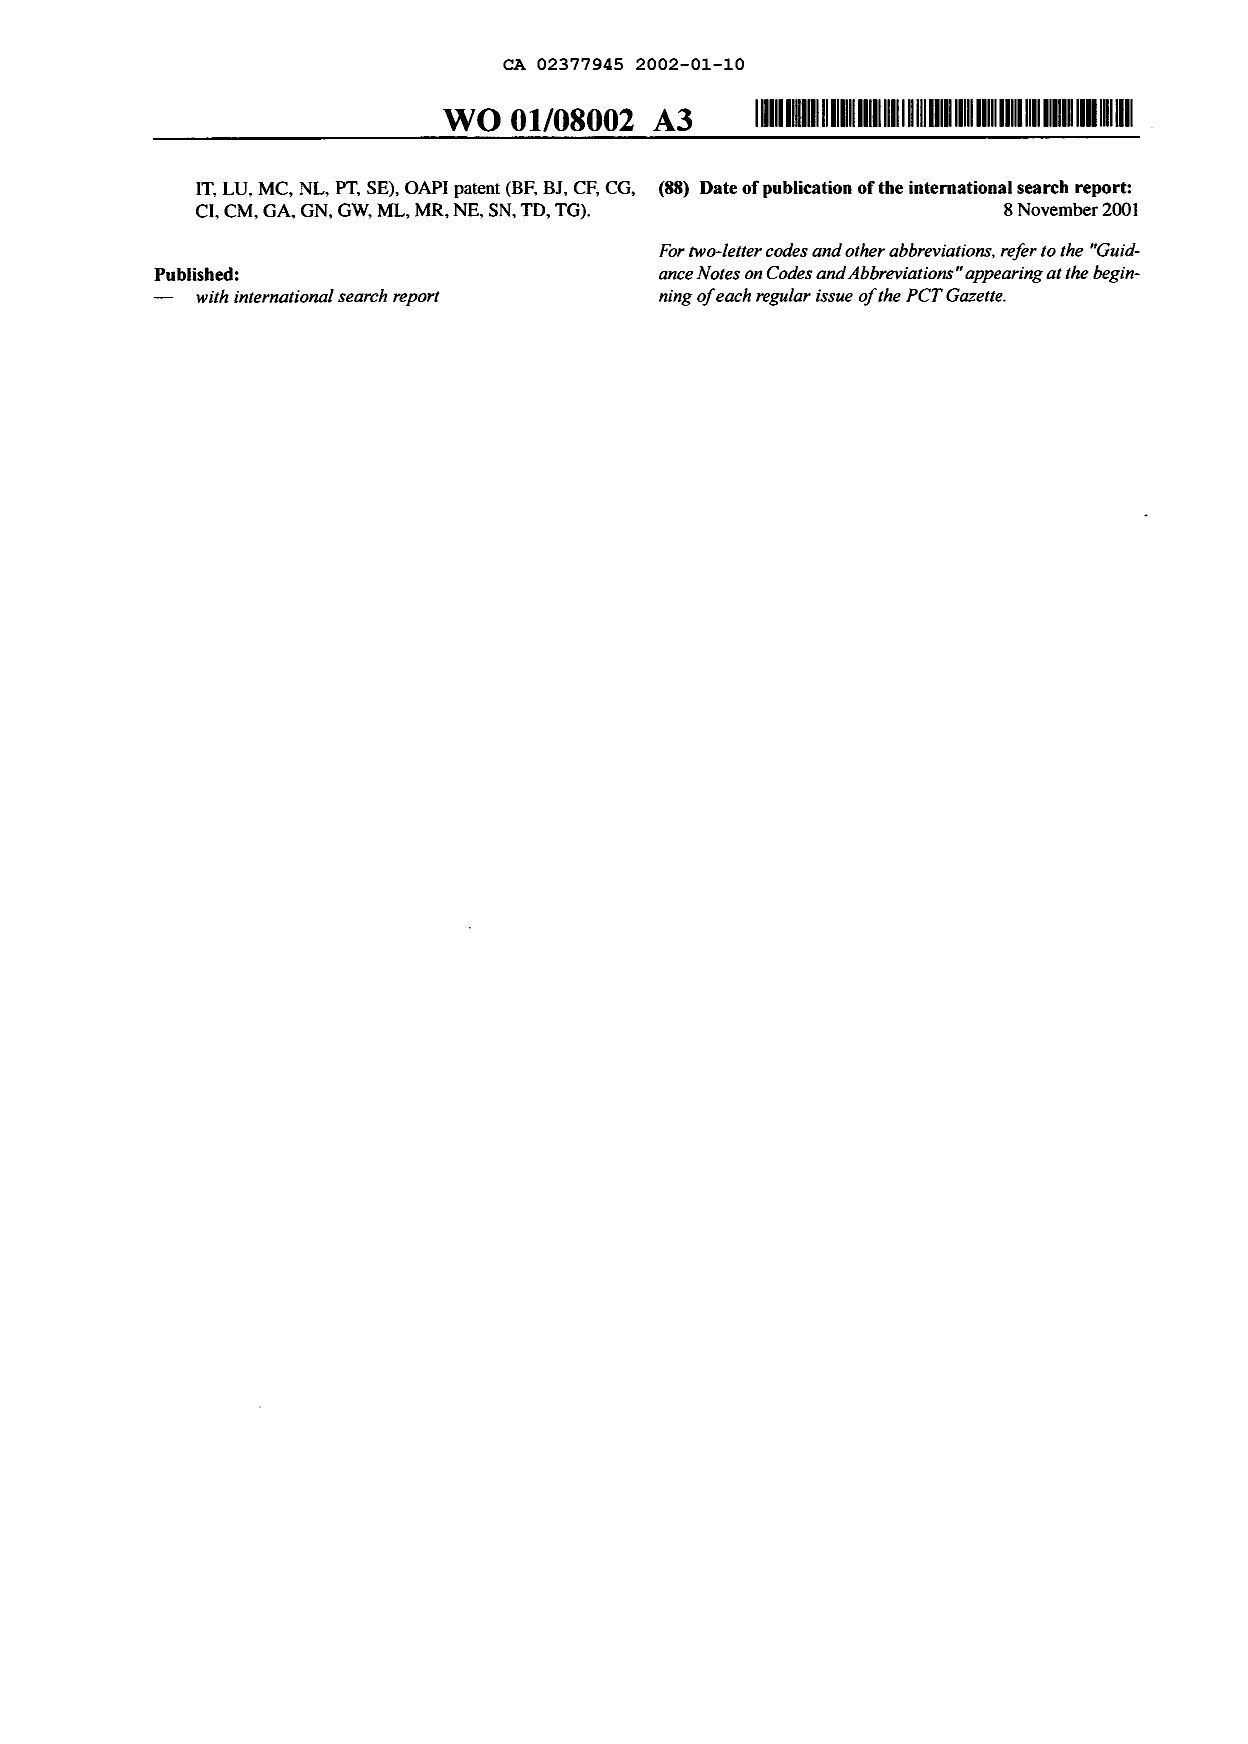 Document de brevet canadien 2377945. Abrégé 20011210. Image 2 de 2